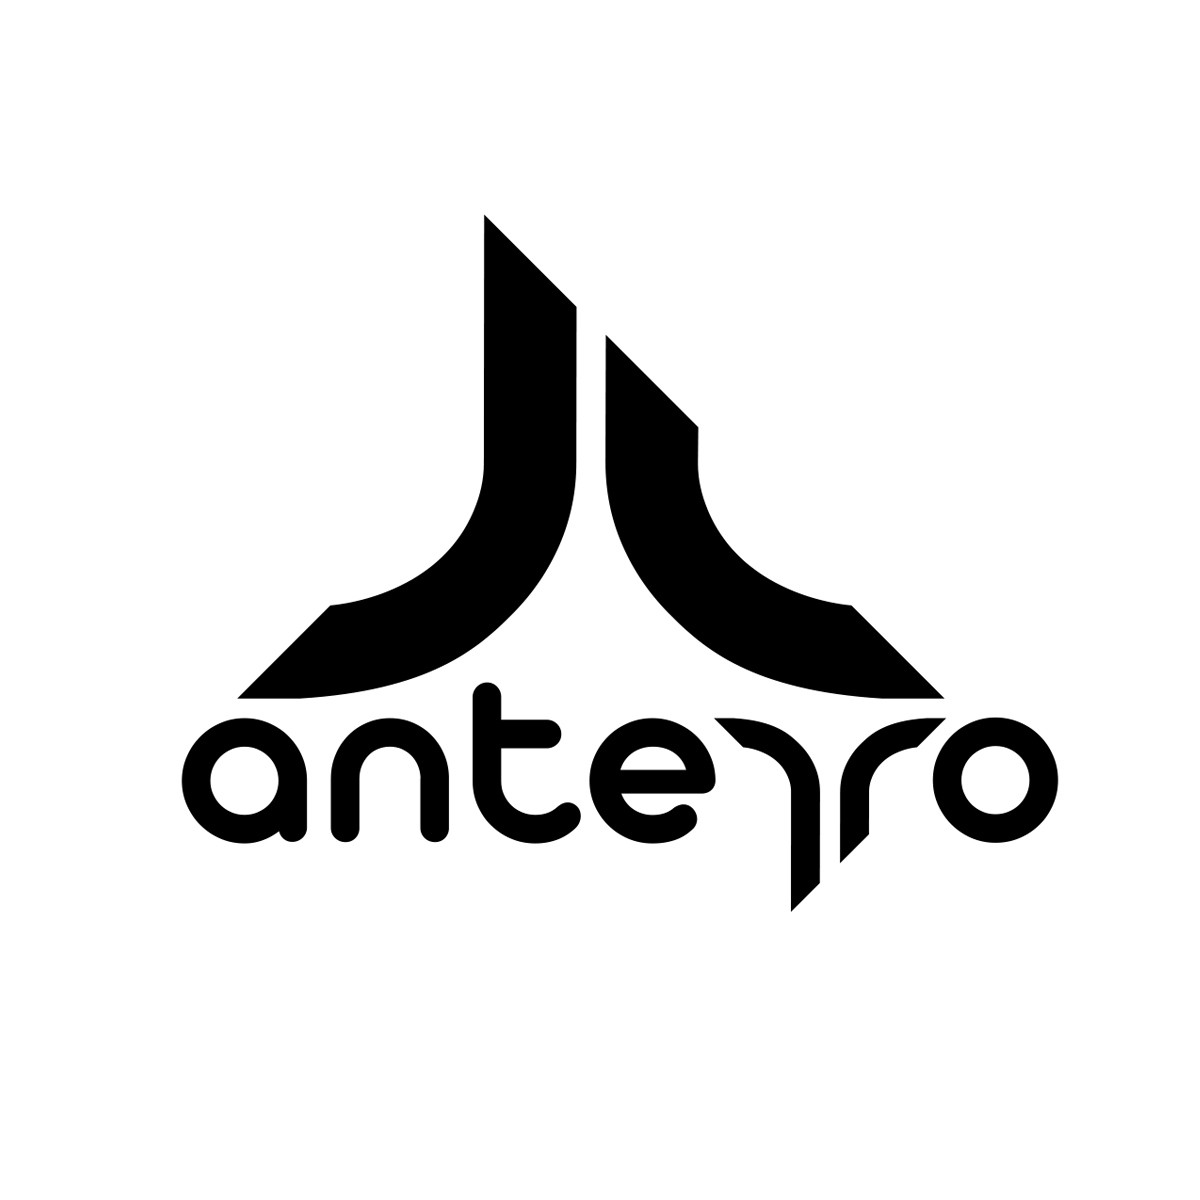 Anterro Ahonen - Specialised design activities in Tartu